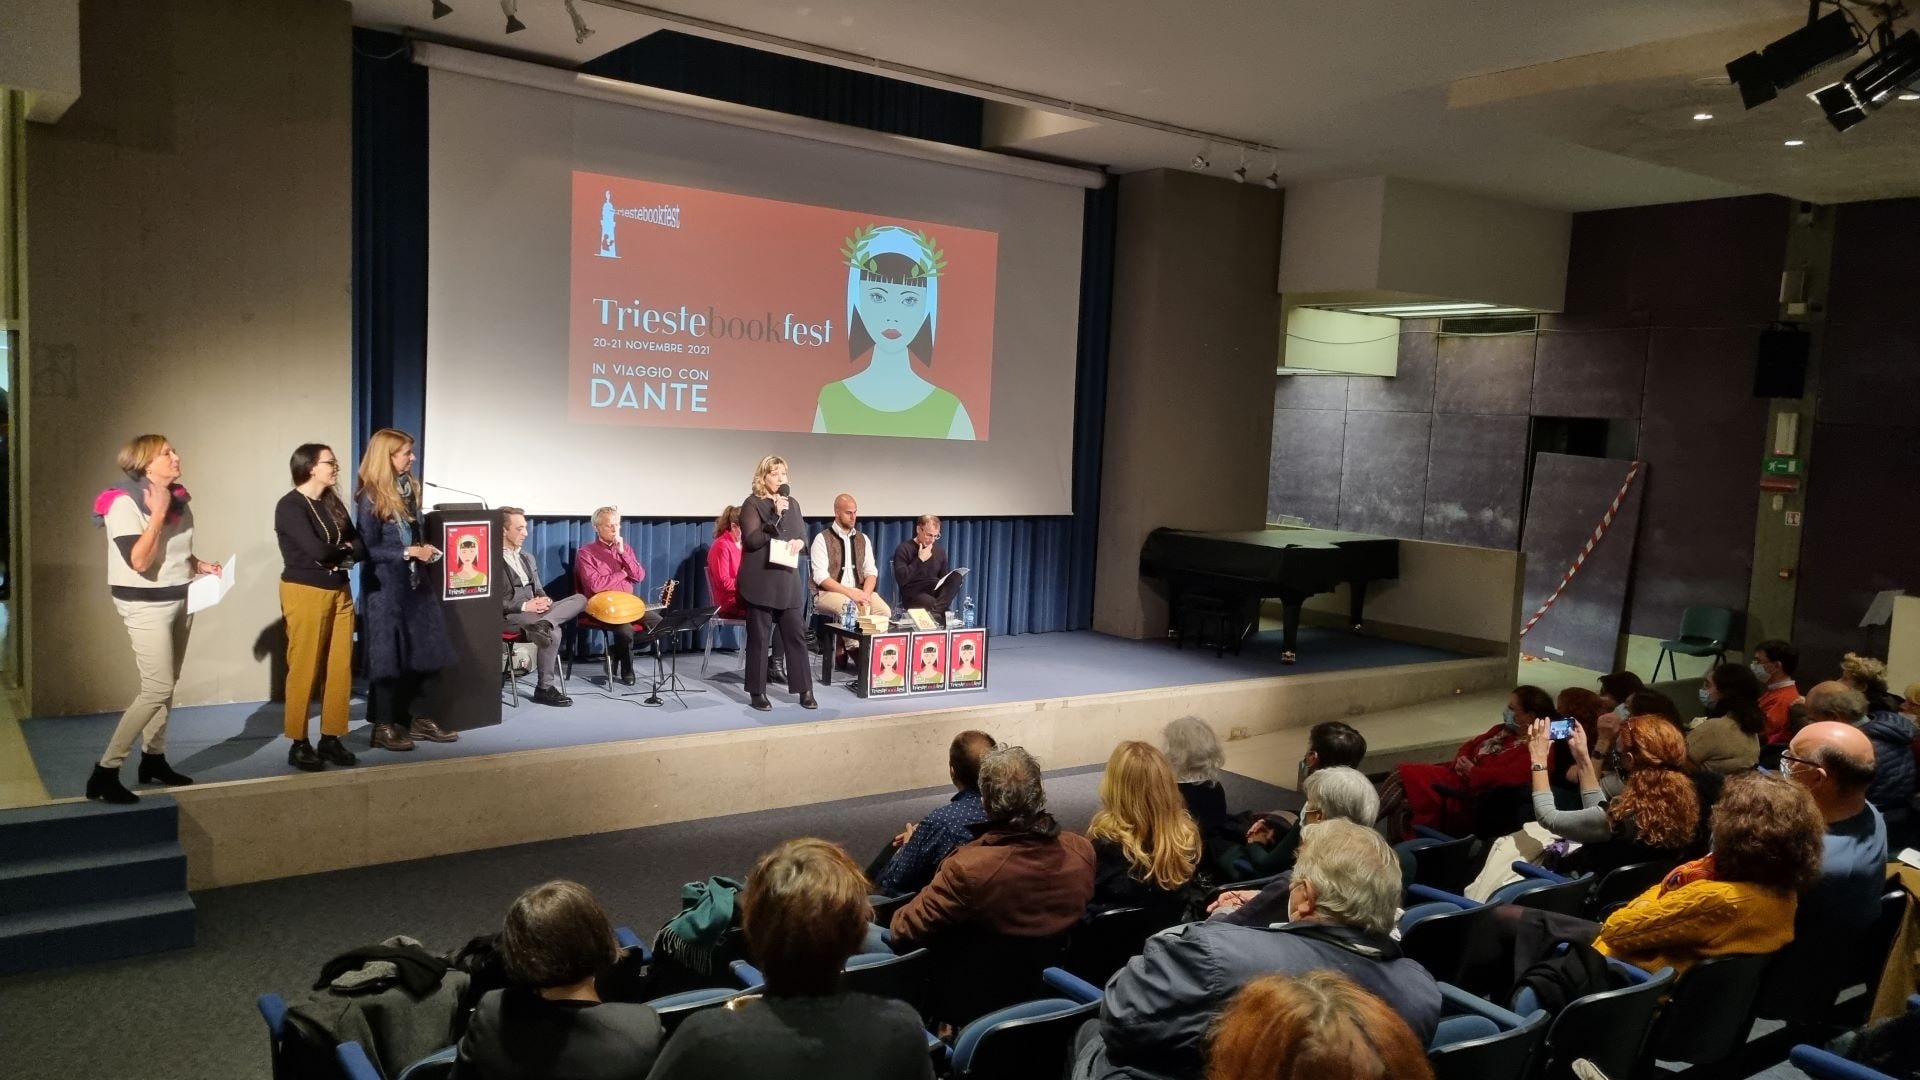 Trieste Book Fest 2021 in viaggio con Dante 1 2 min